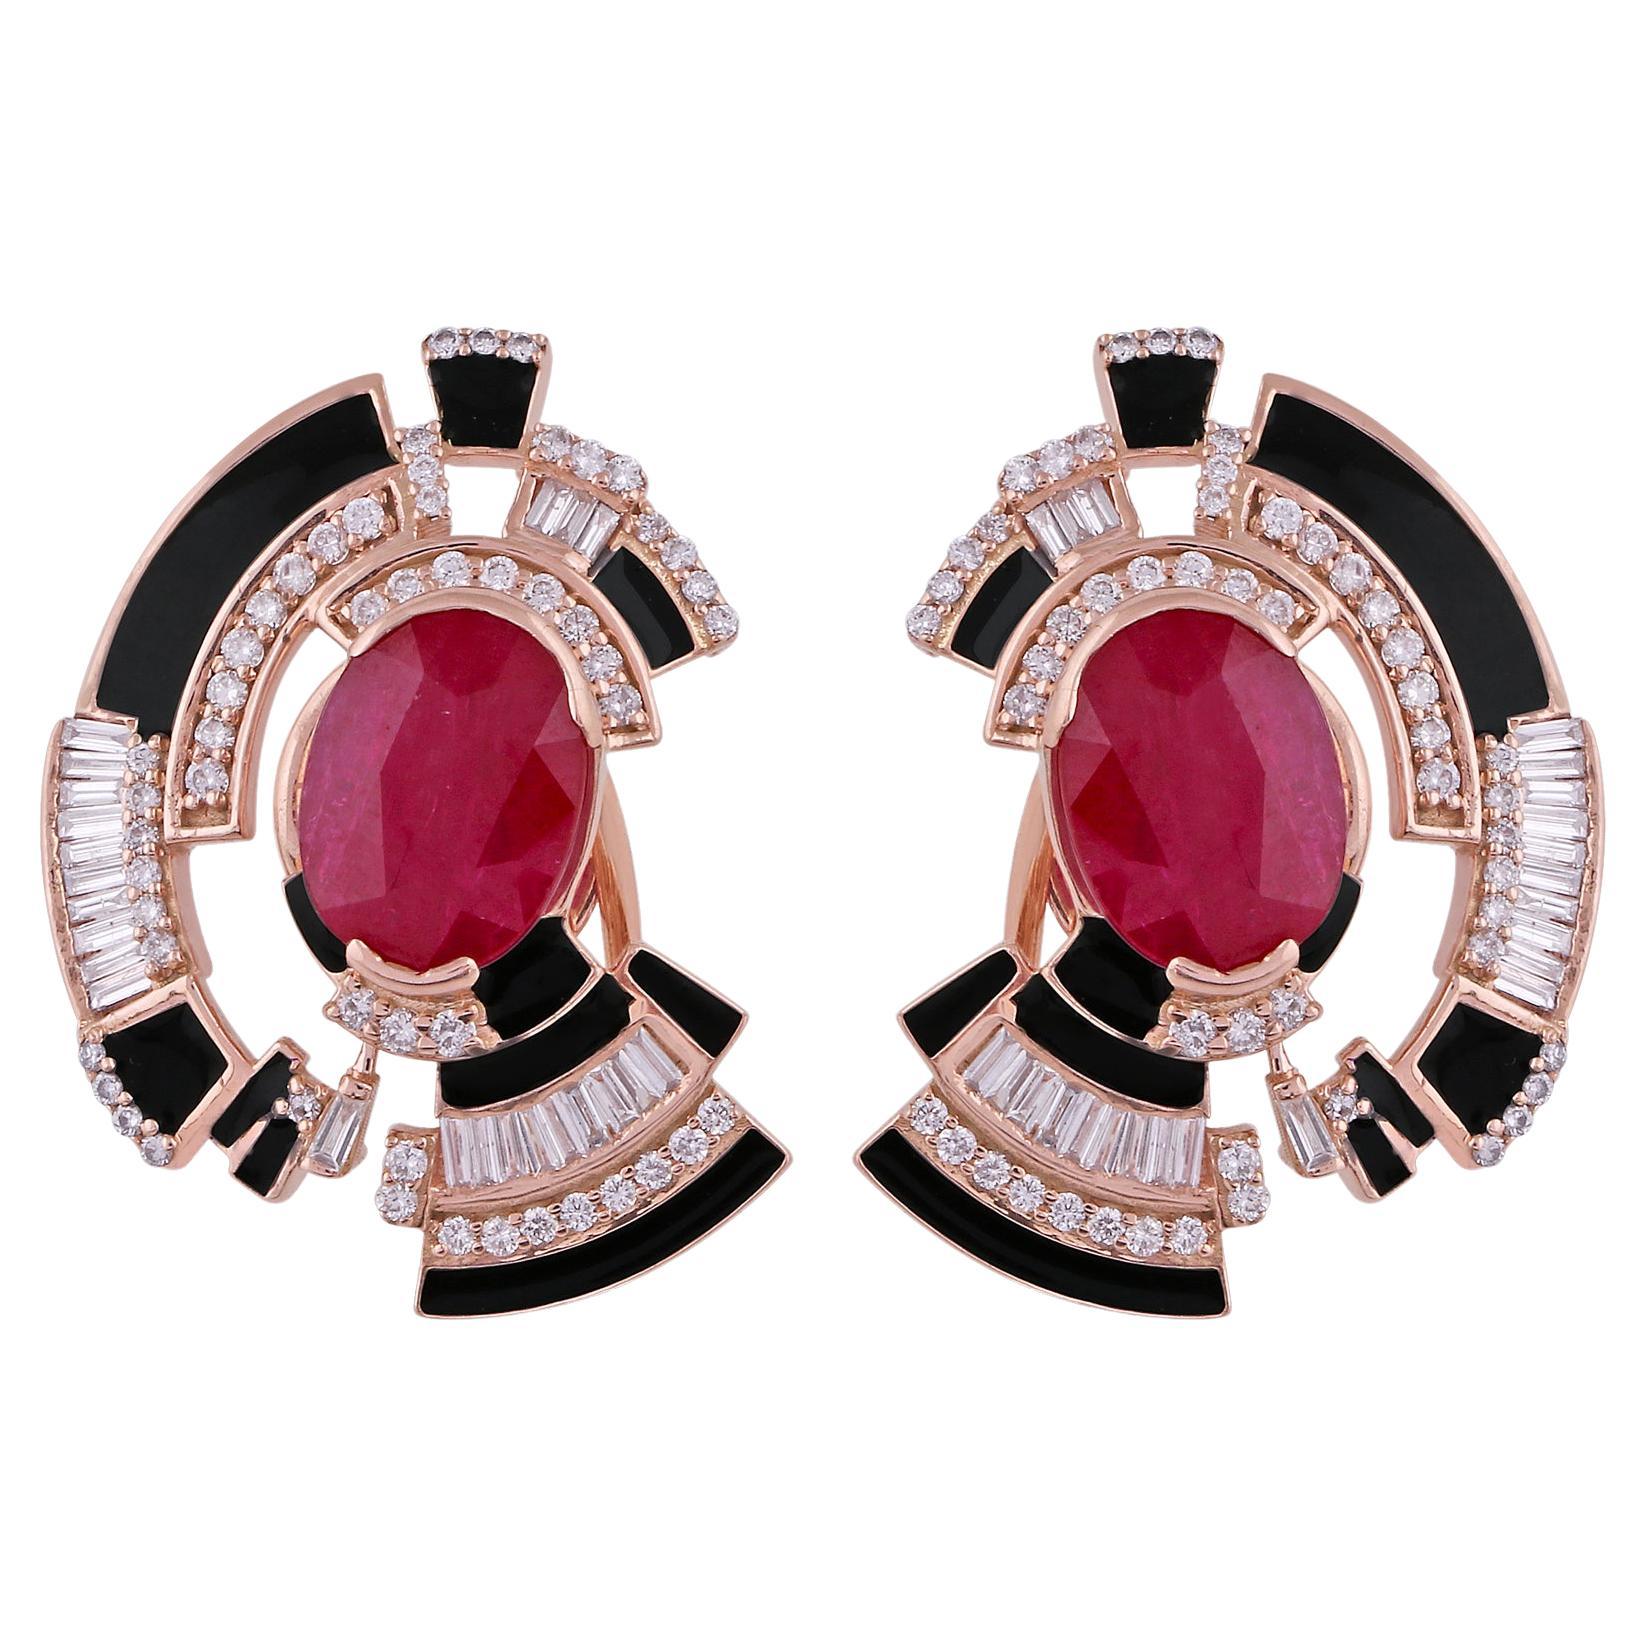 Red Ruby Gemstone Enamel Stud Earrings Baguette Pave Diamond Solid 18k Rose Gold